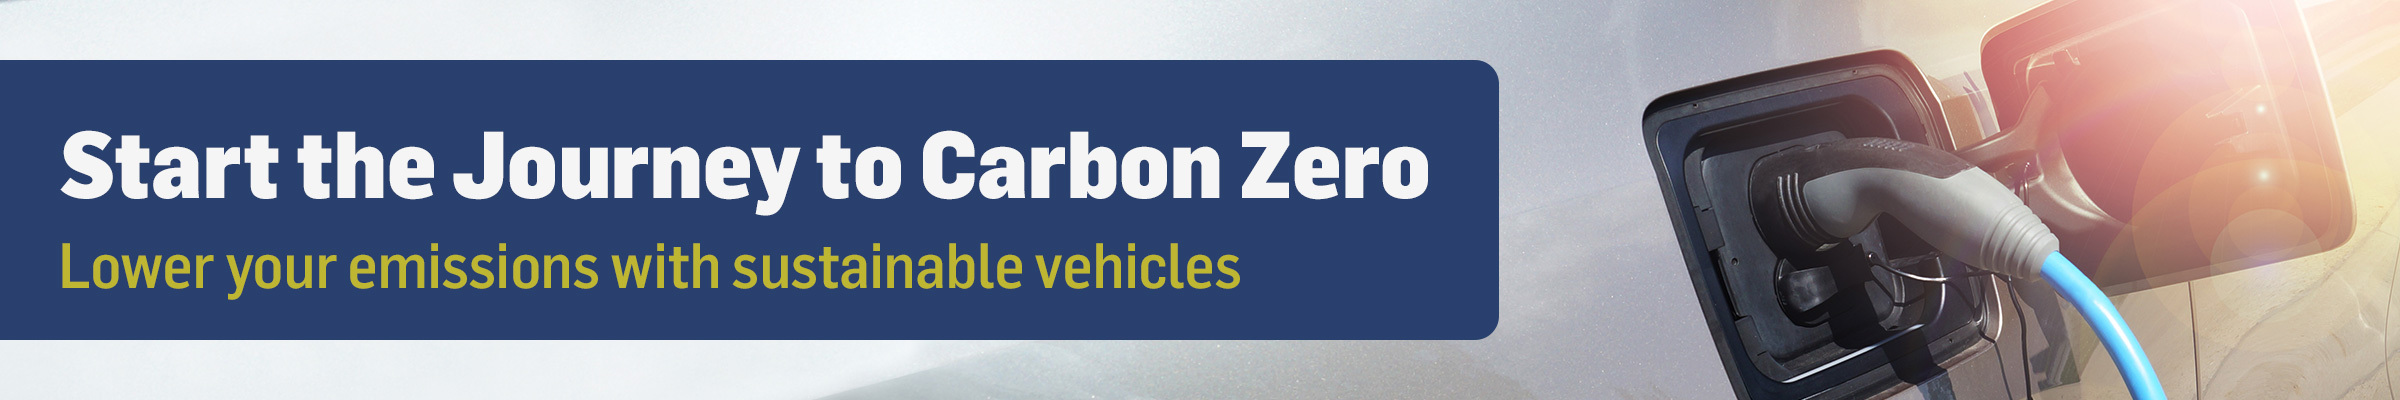 FP_Journey-to-Carbon-Zero_Sep-2021